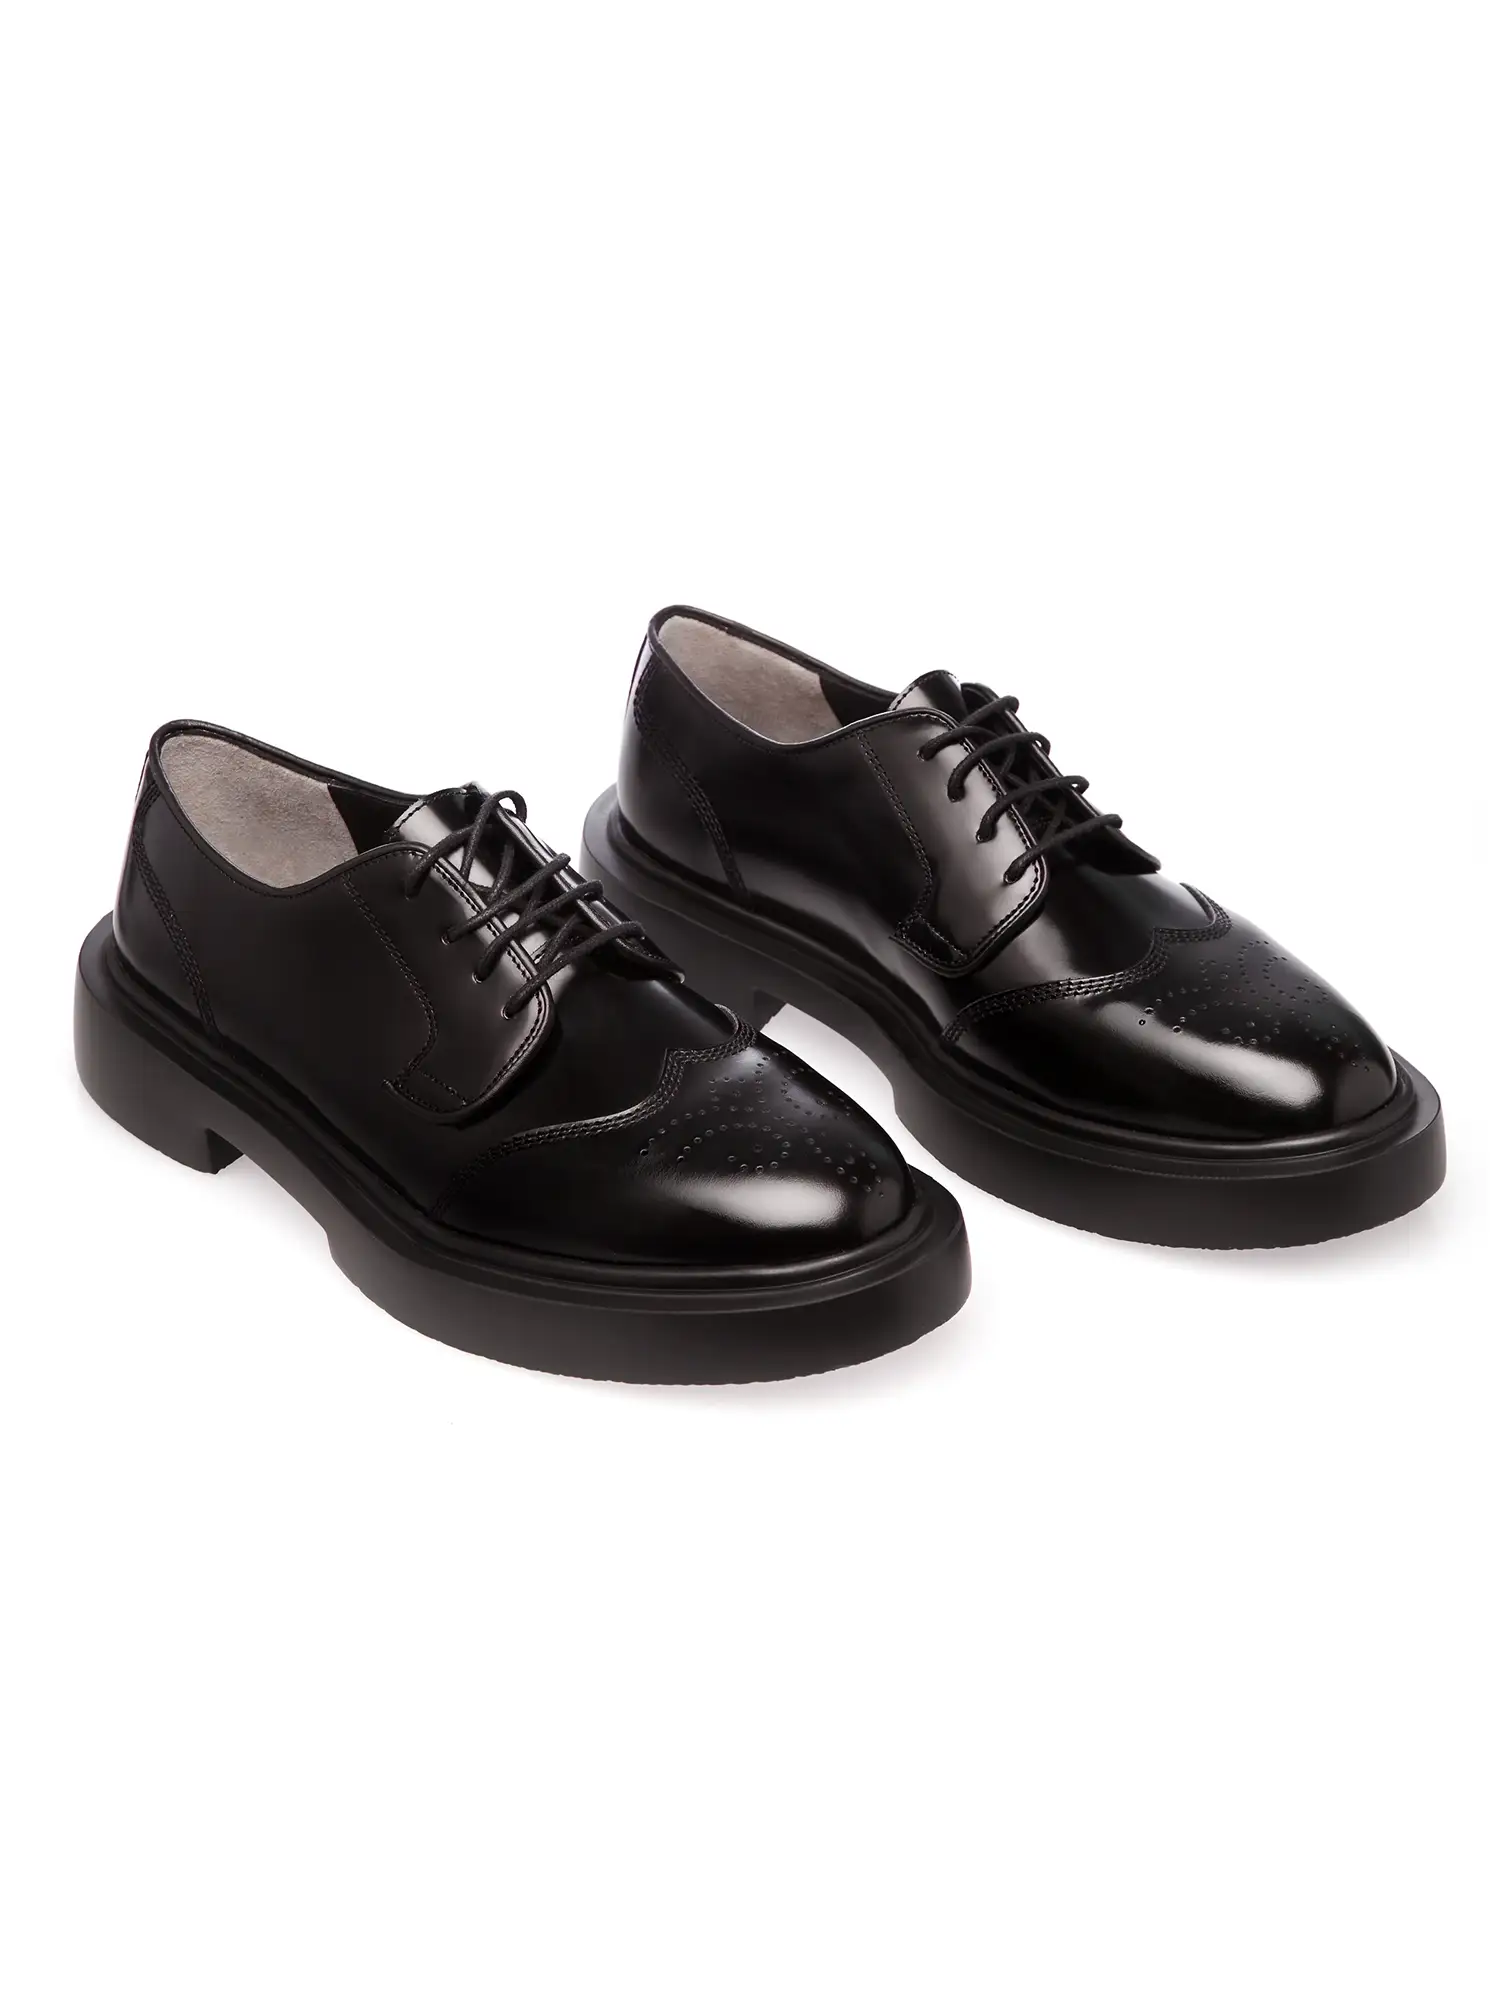 Pantofi Bărbați Negri Eleganti Piele Florantica Naturală Gemelli, Comanda Online, Livrare in 5-7 zile, Comanda Online din Noua Colectie Gemelli Shoes